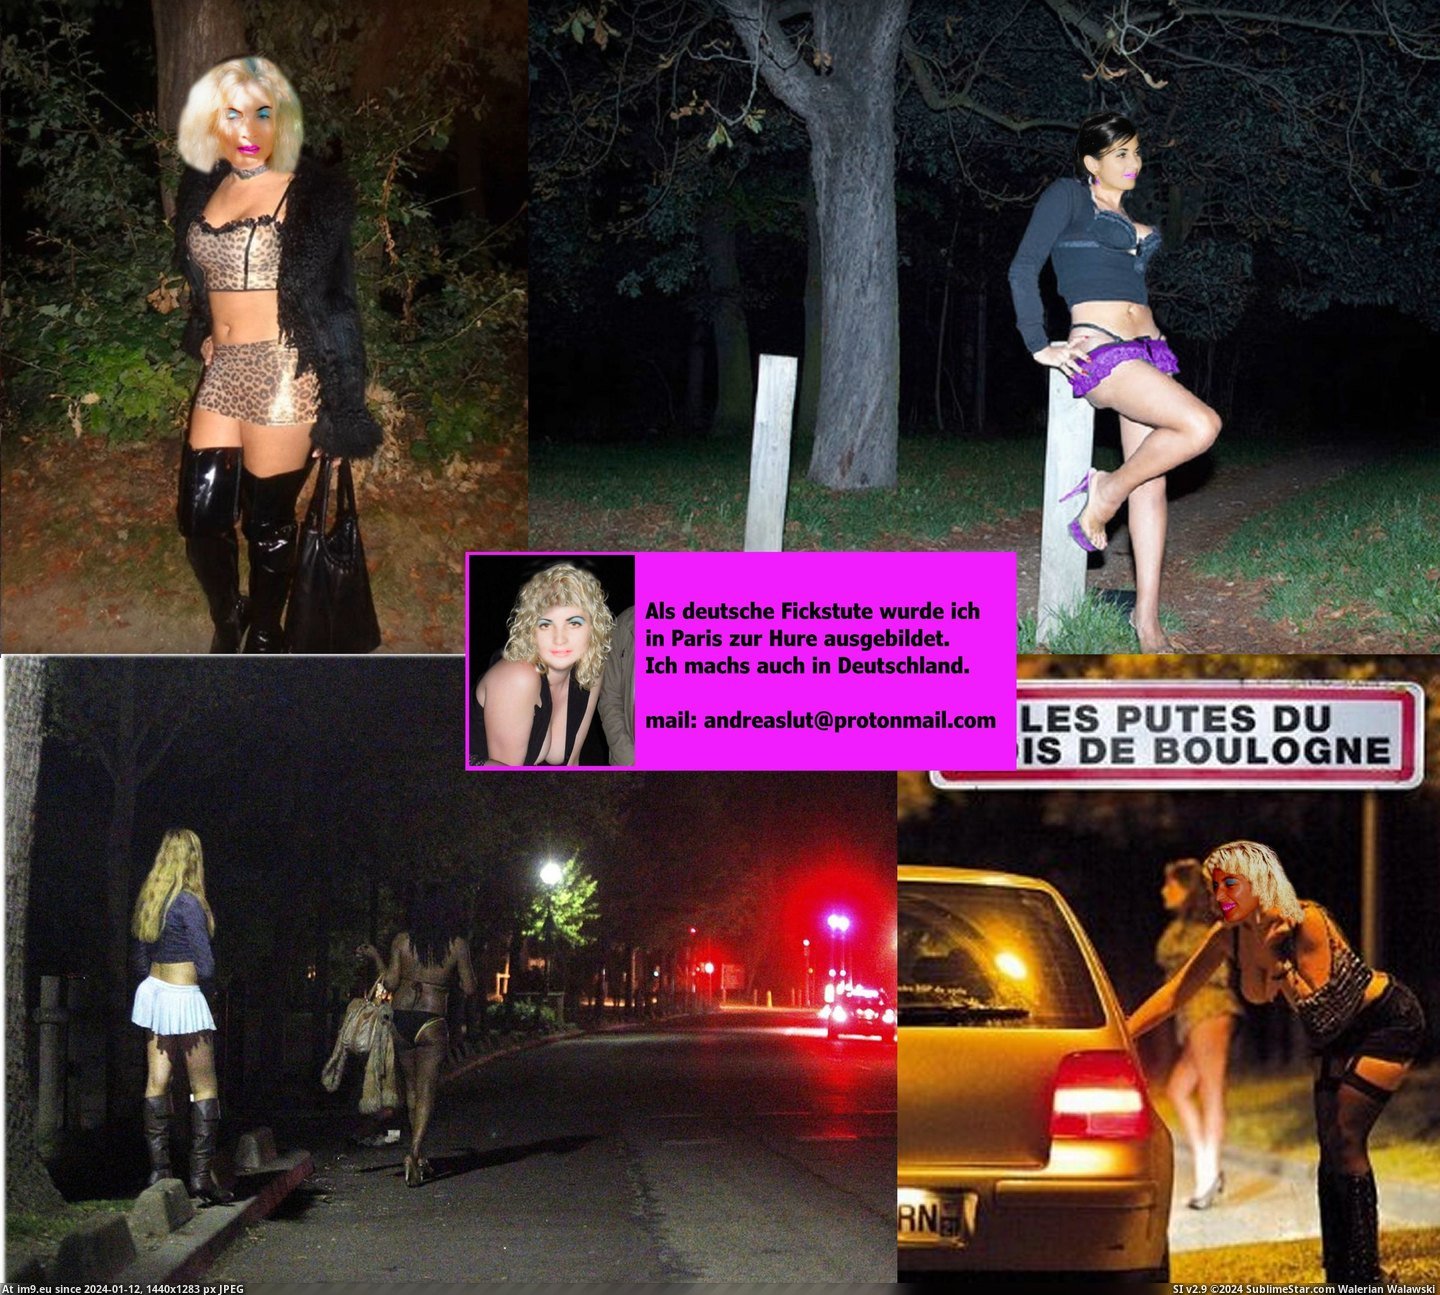 #Slut #Whore #Fotze #Prostituee #Webwhore #Nutte #Pute #Andrea #Strich #Hure #Putain Andrea Bois de Boulogne putes.2jpg Pic. (Bild von album Instant Upload))